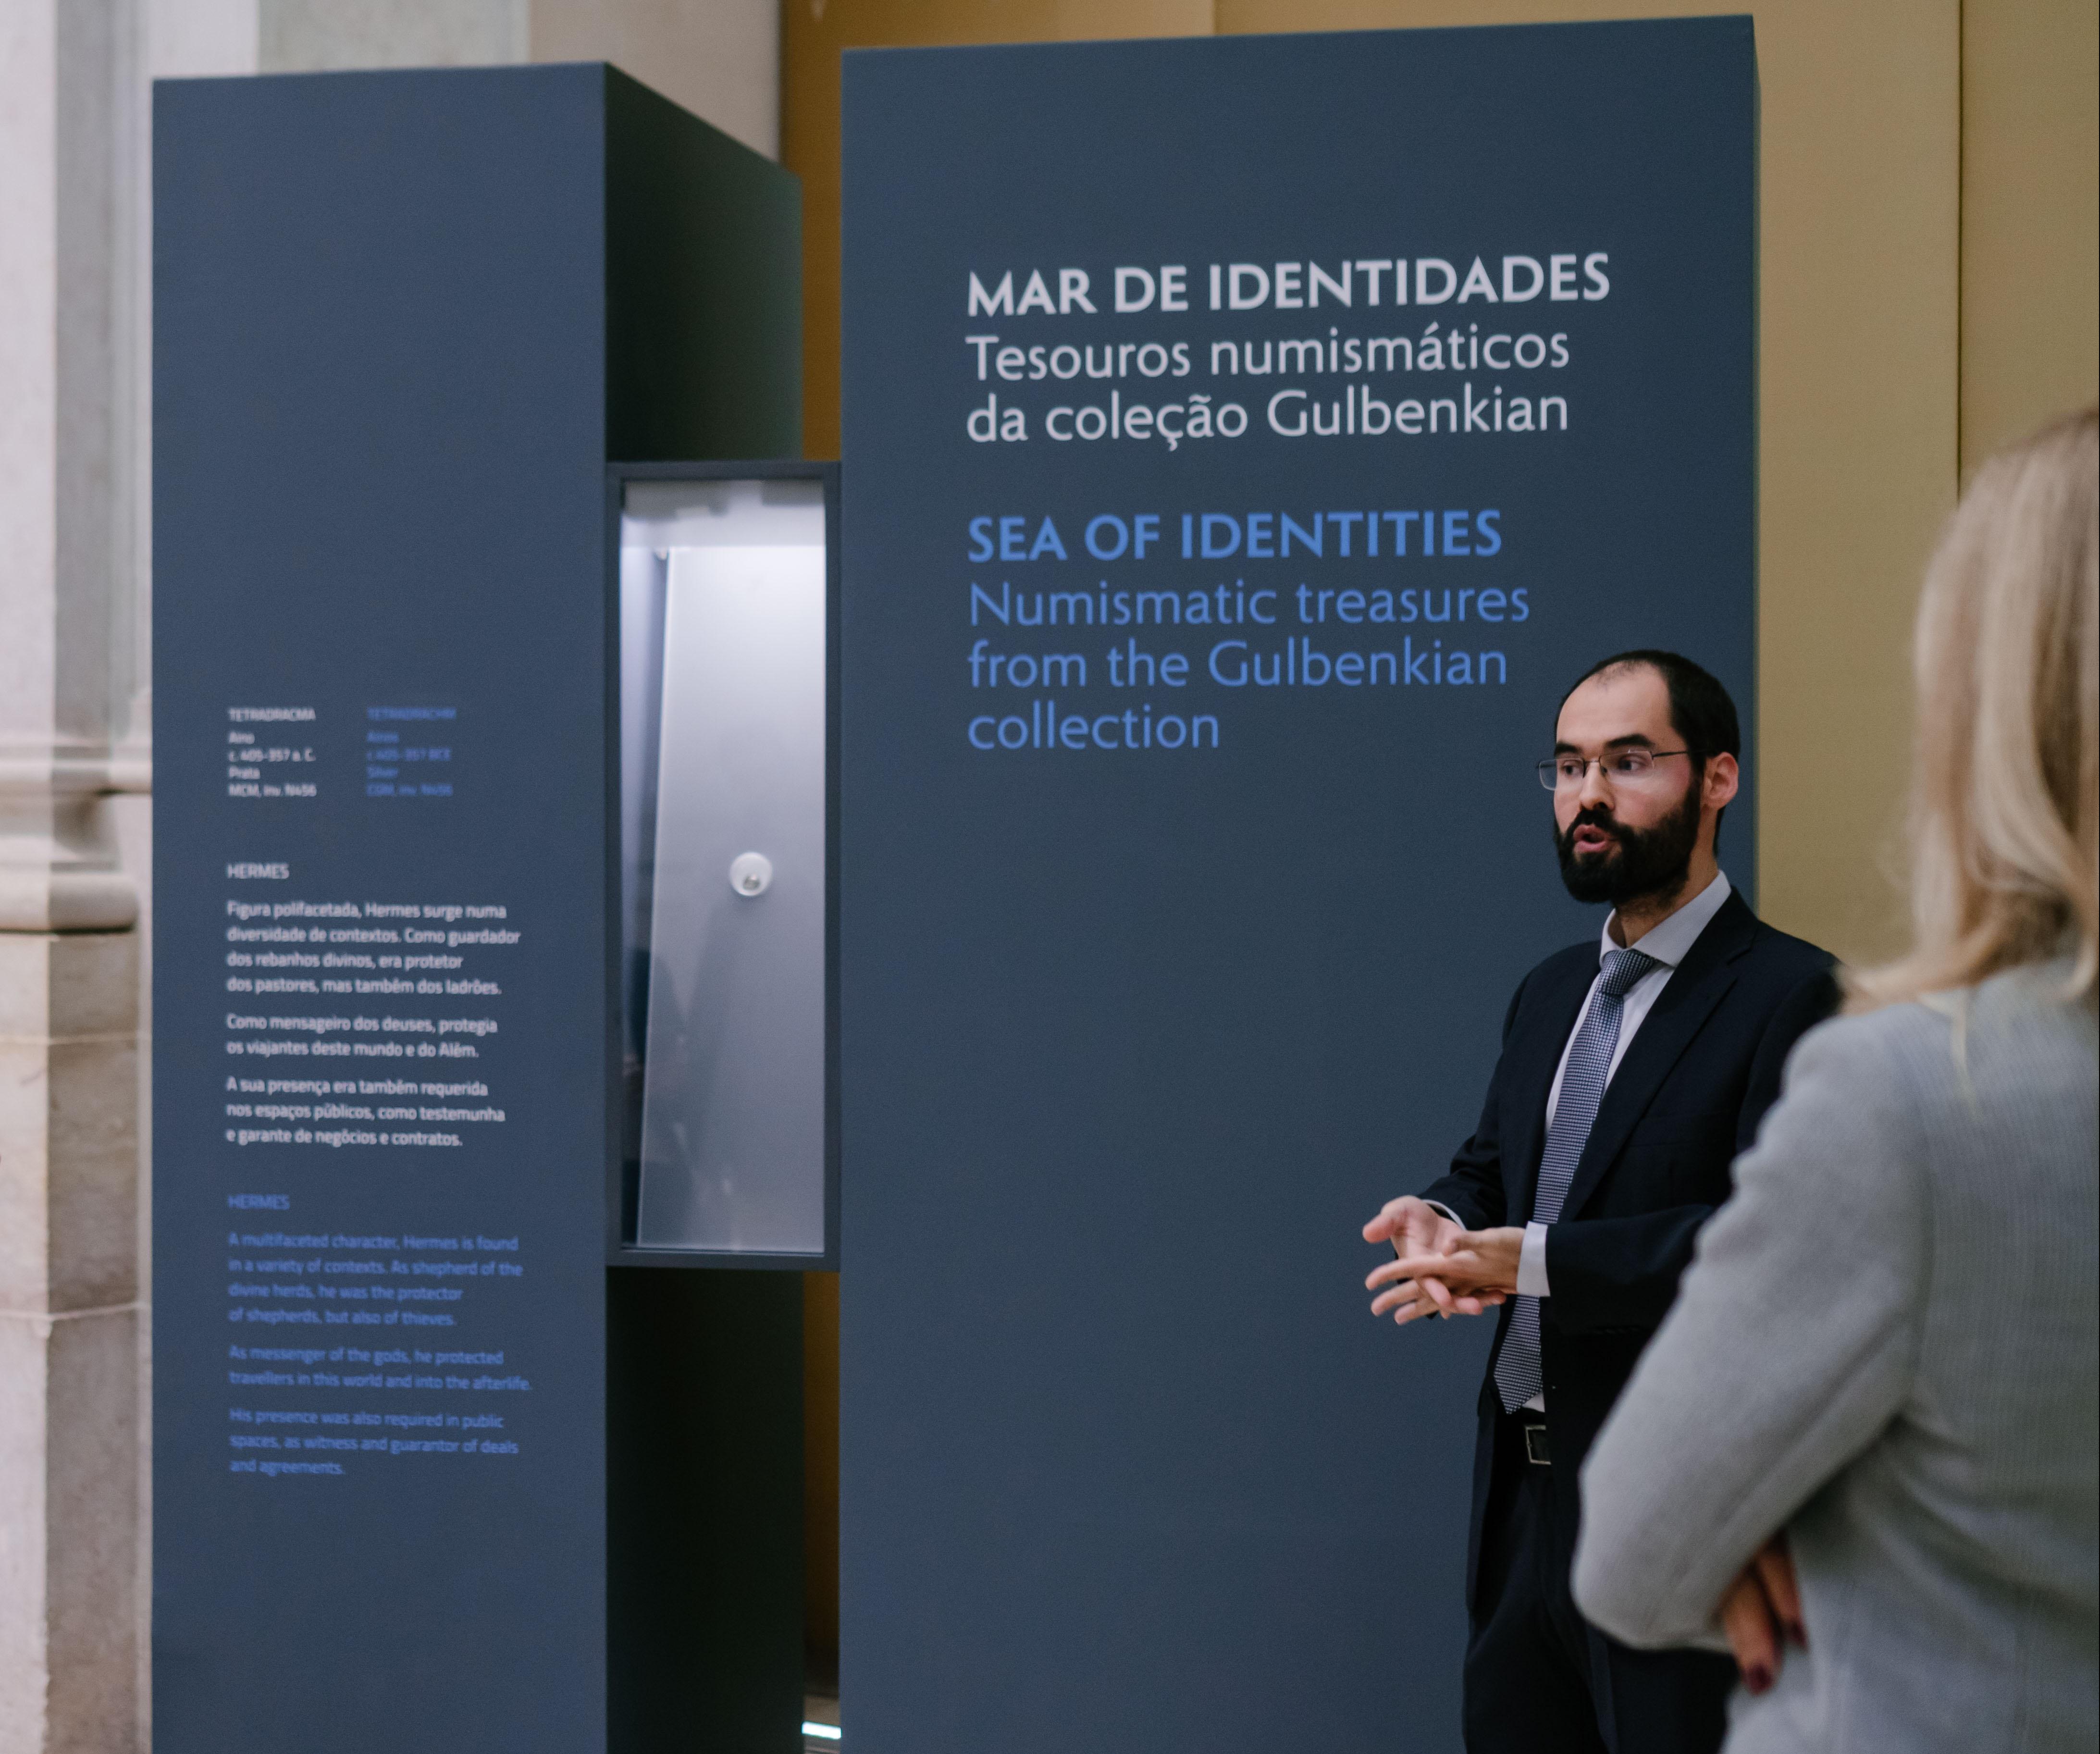 Curador da exposição "Mar de identidades" orienta a visita à exposição tendo como pano de fundo um das vitrines da exposição